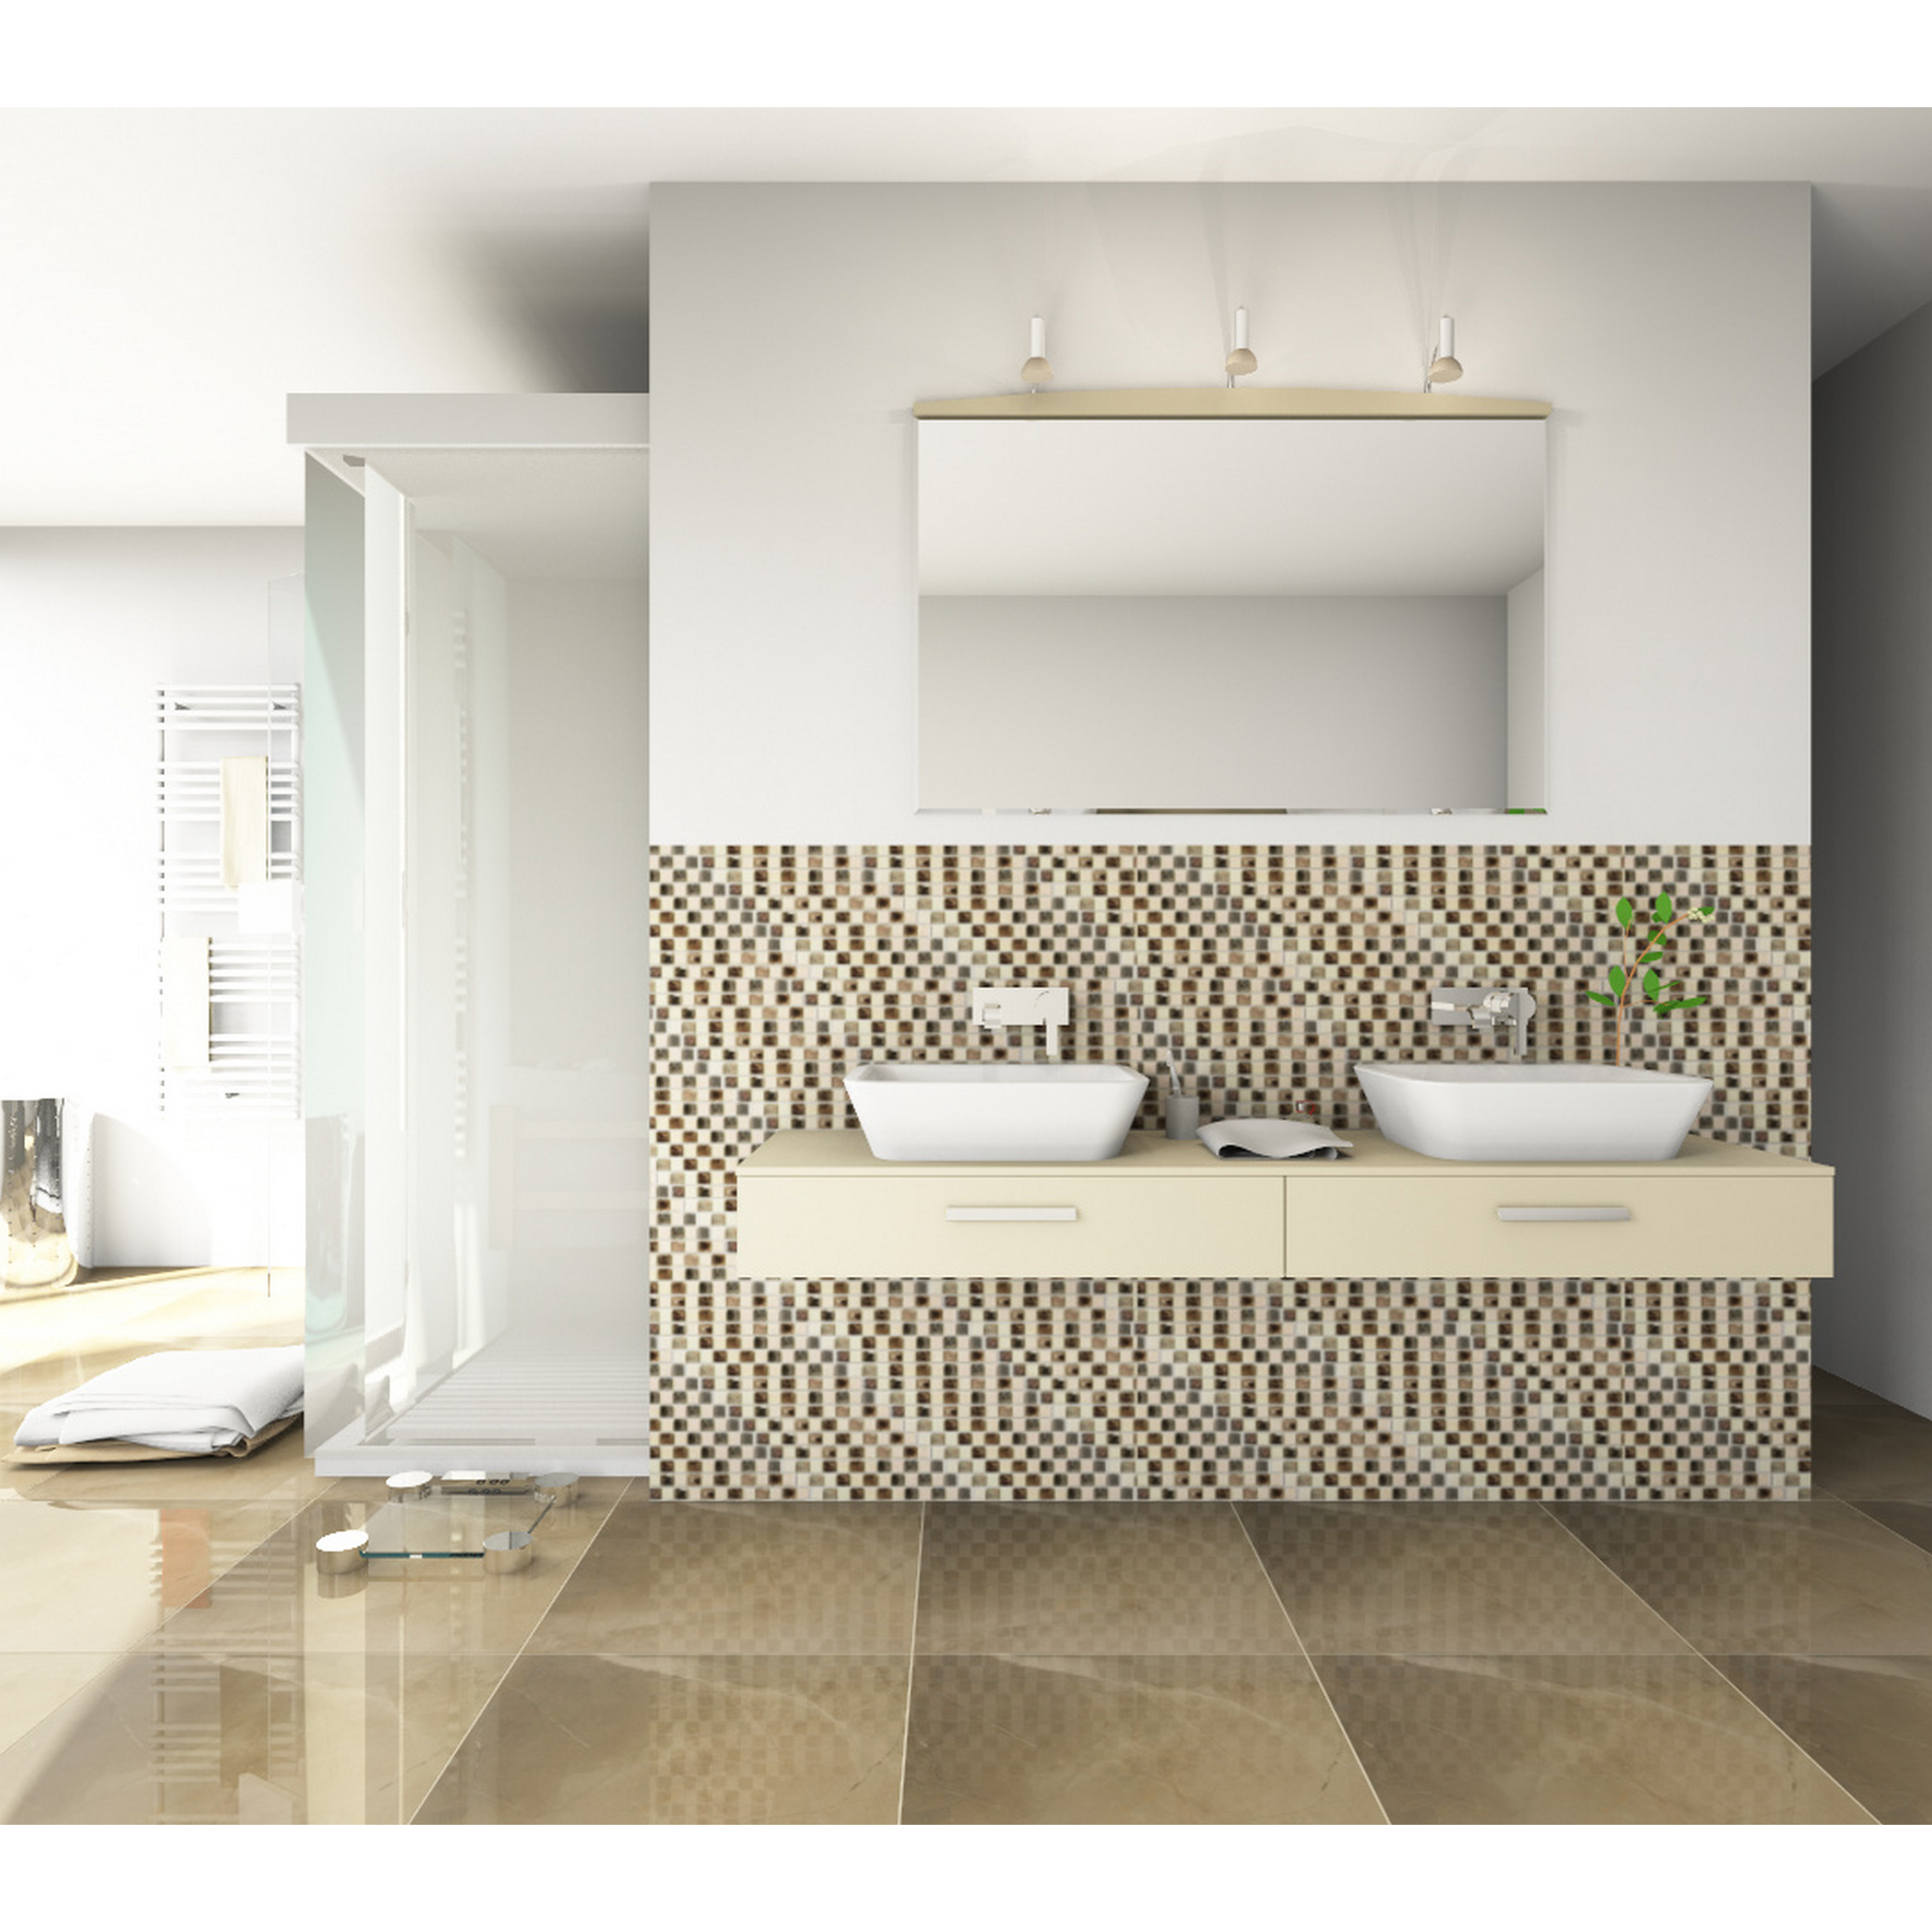 Mosaikfliese 'Zypern' Natursteinzeug beige 30,5 x 30,5 cm + product picture